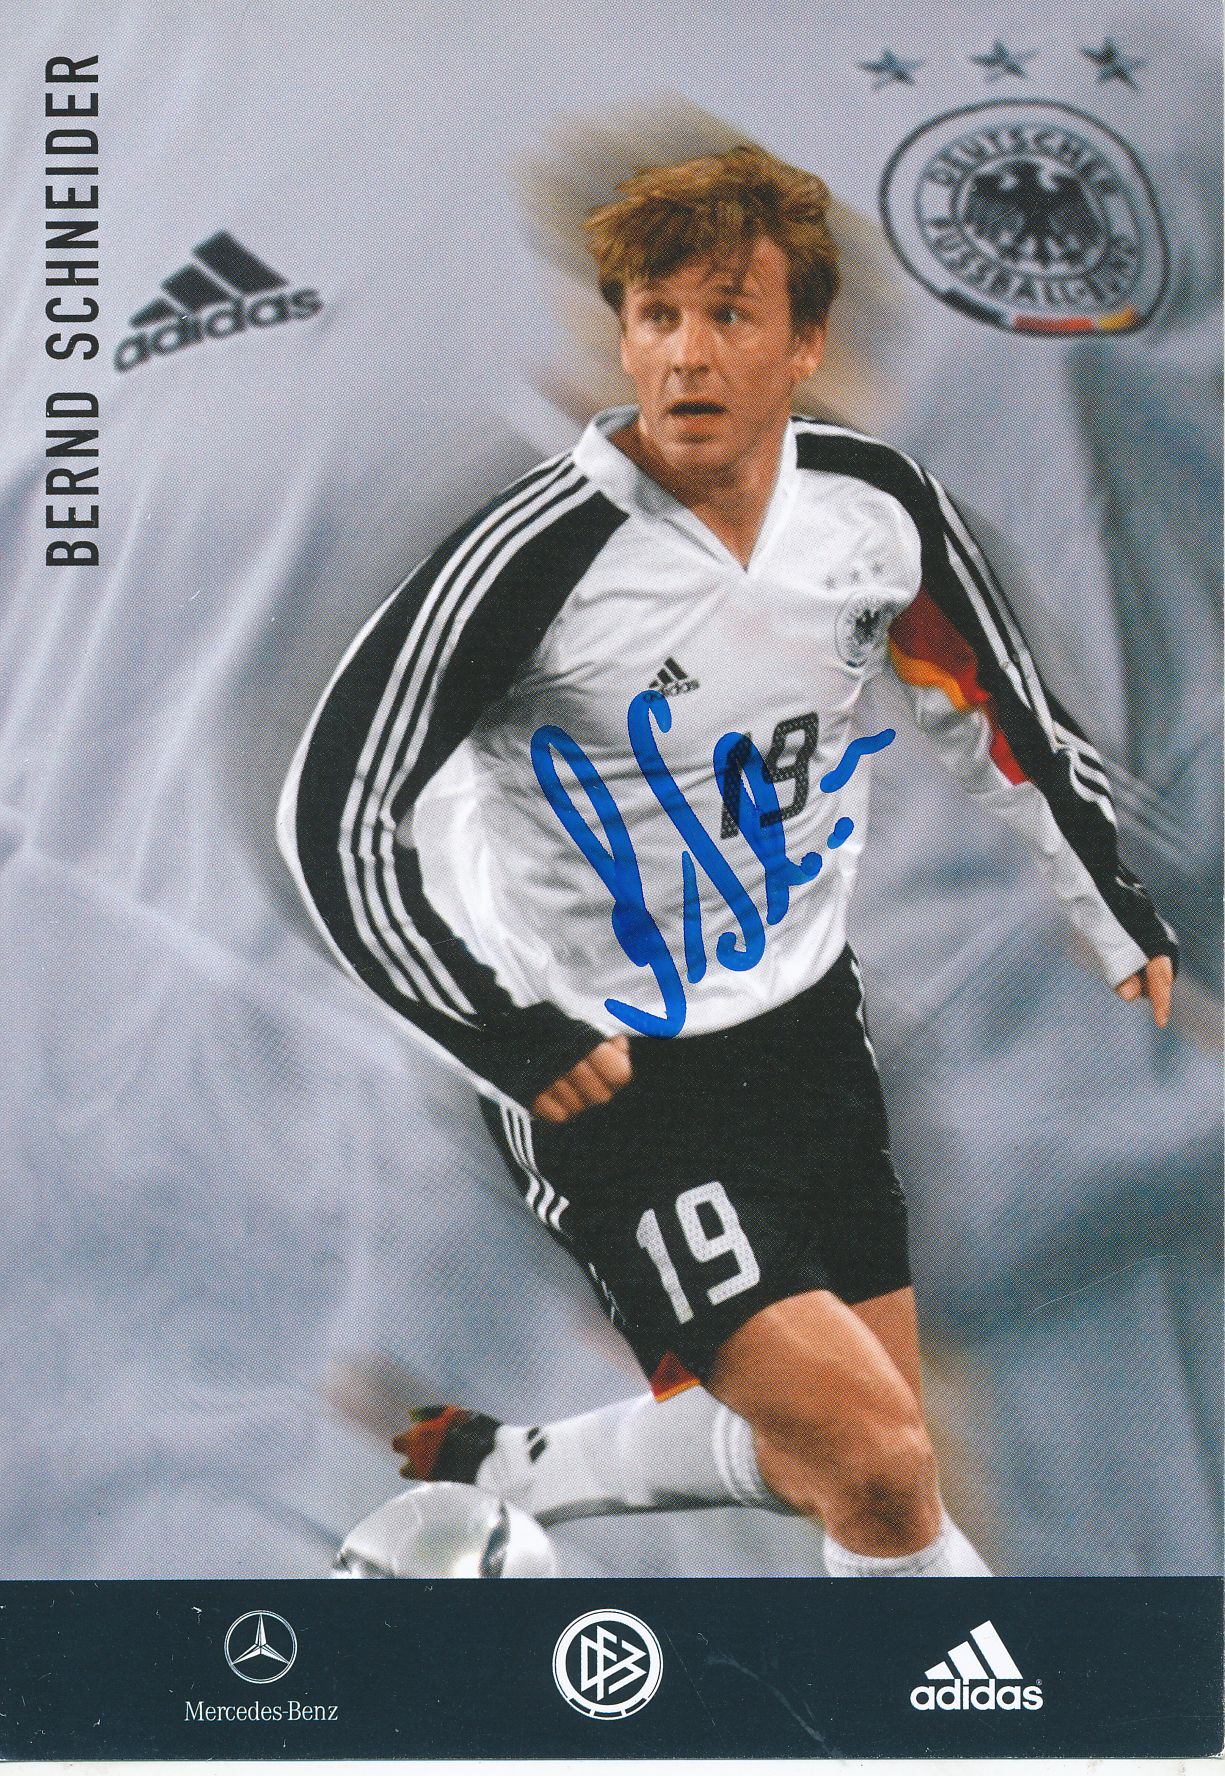 Bernd Schneider DFB Autogrammkarte 2006 Original Signiert+A 131973 